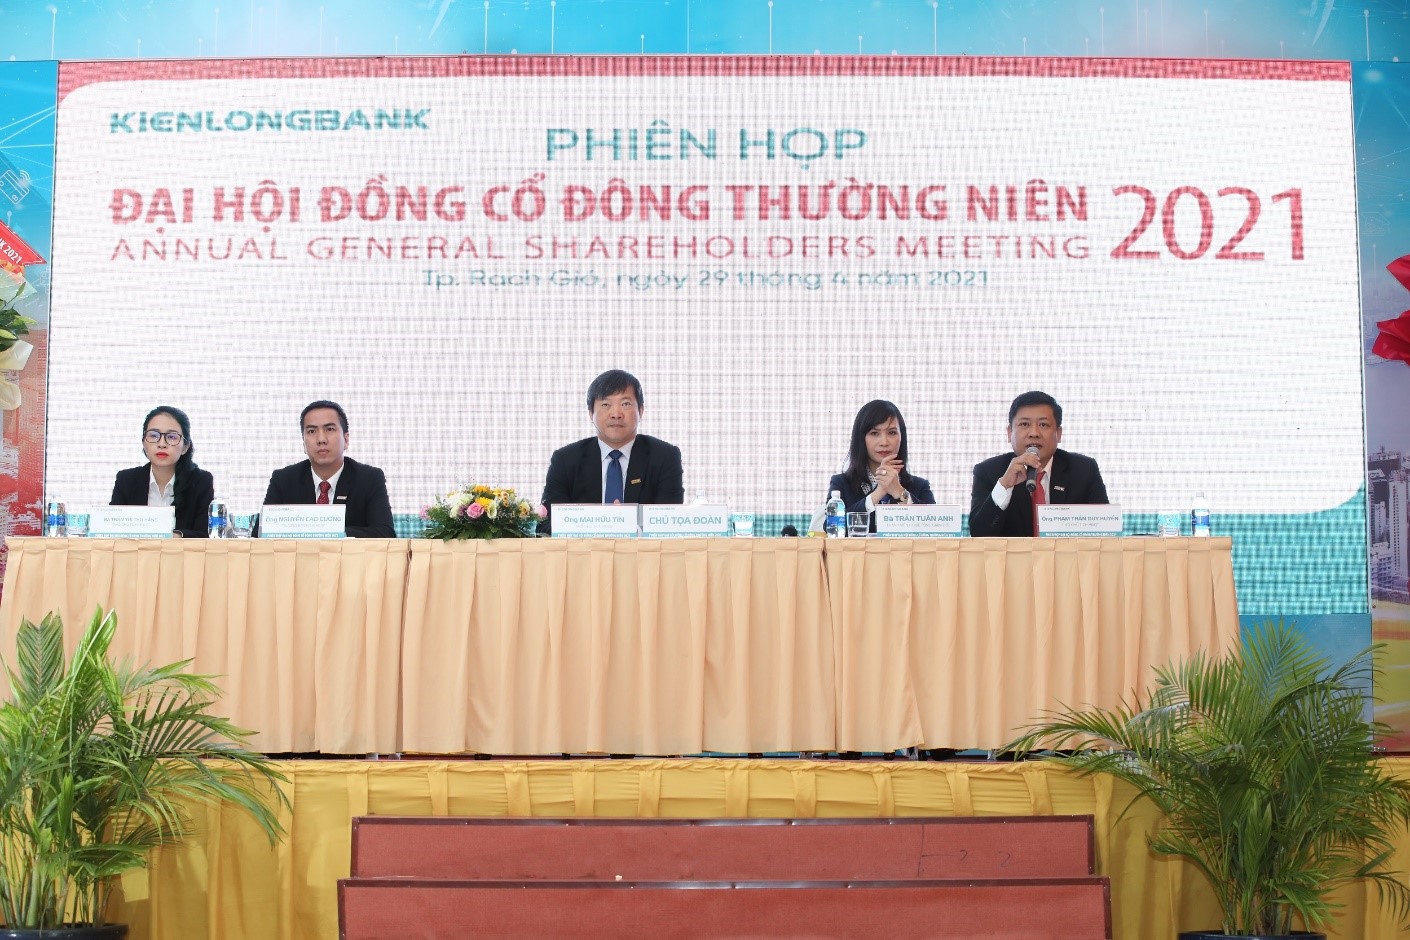 Chủ tọa đoàn điều hành tại phiên họp ĐHĐCĐ thường niên Kienlongbank năm 2021